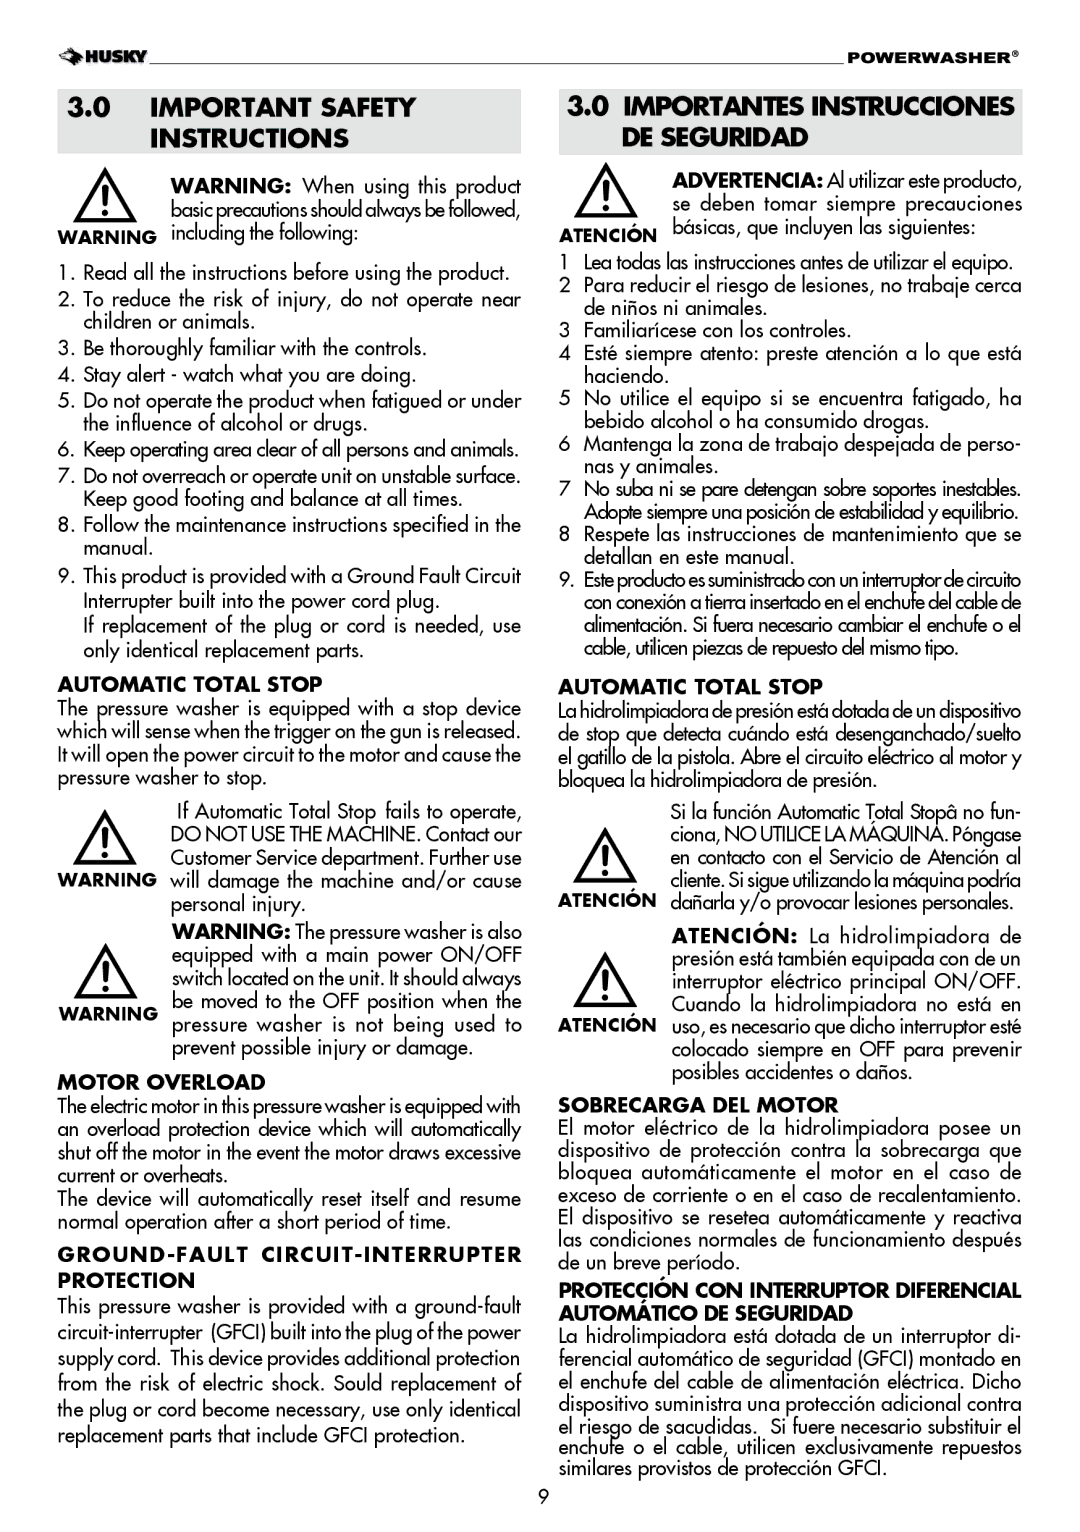 Husky H1600 warranty Important Safety Instructions, Importantes Instrucciones DE Seguridad 